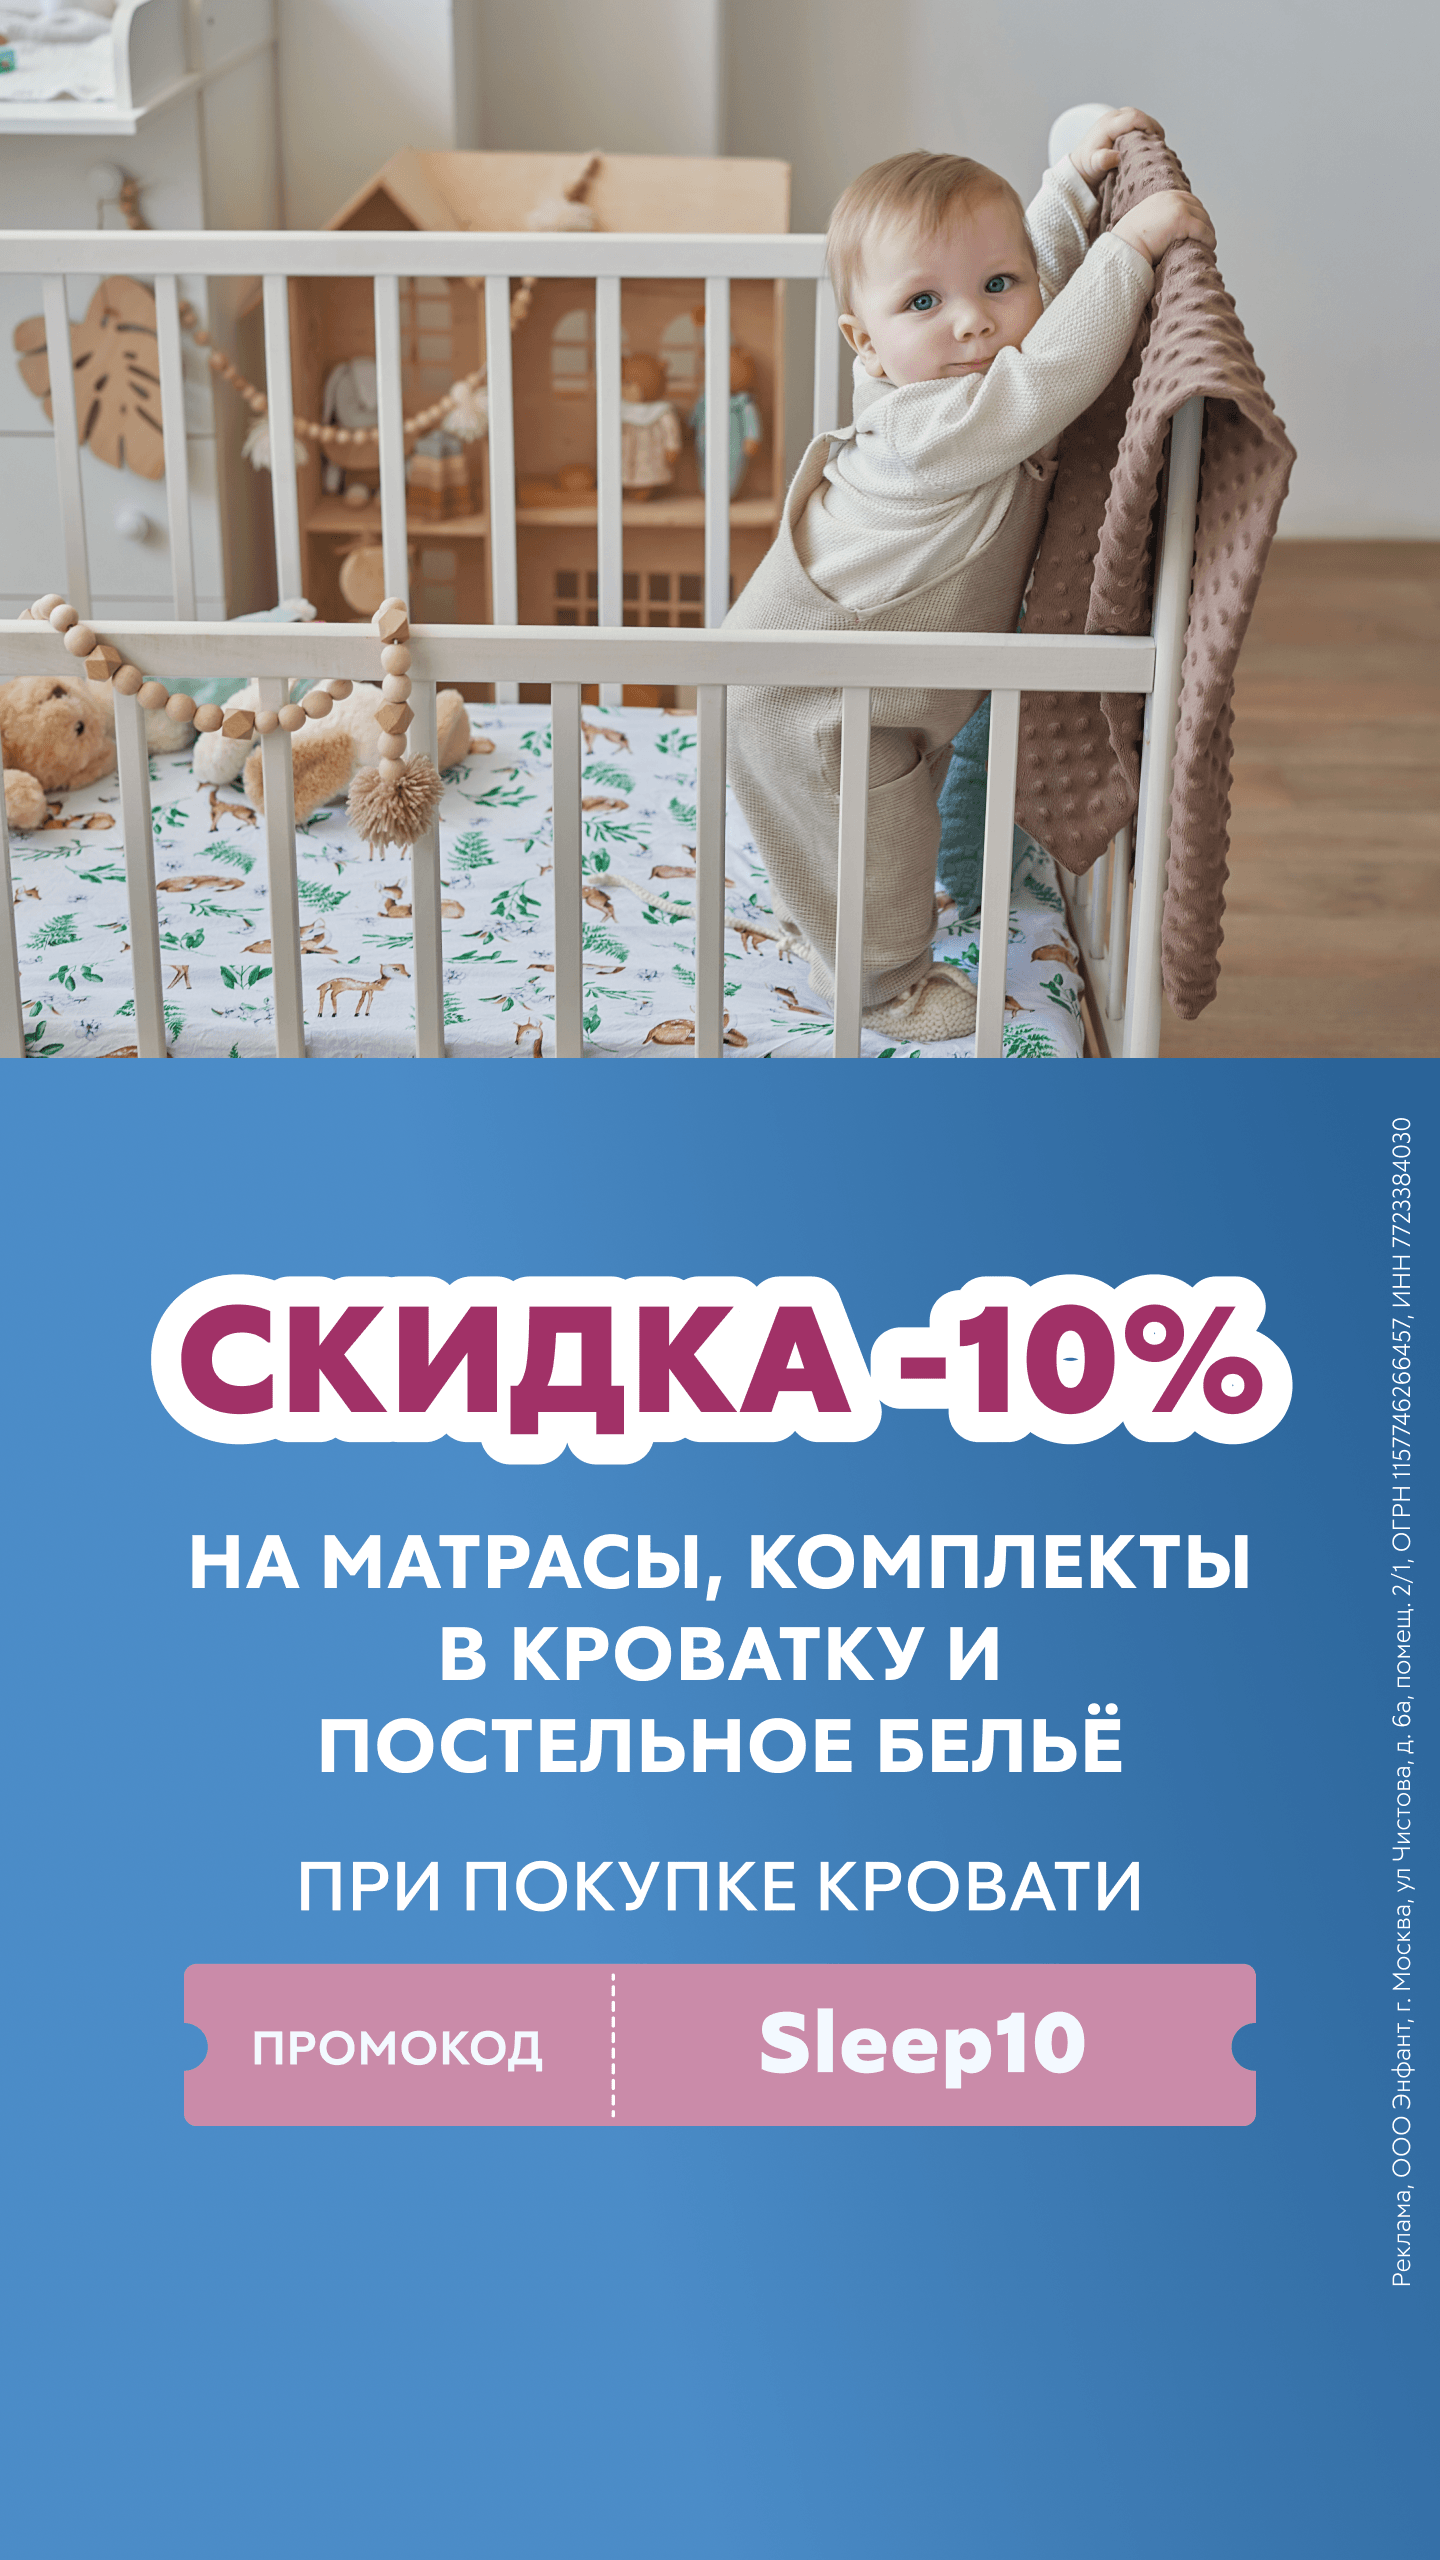 Кроватки для новорожденных в Ростове-на-Дону (9 товаров)